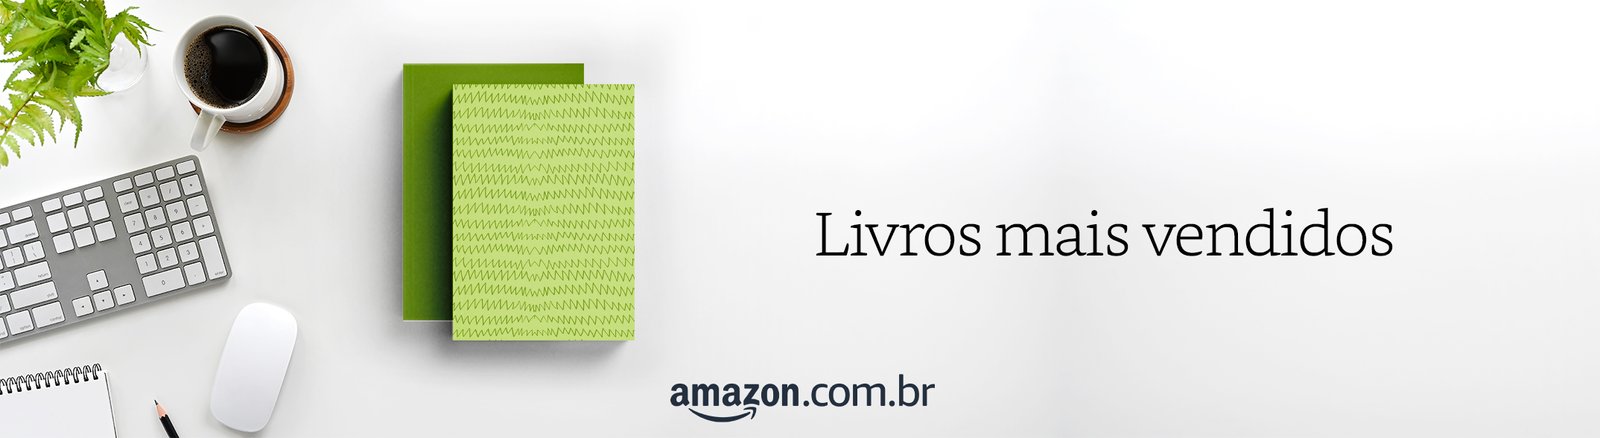 e-books Amazon